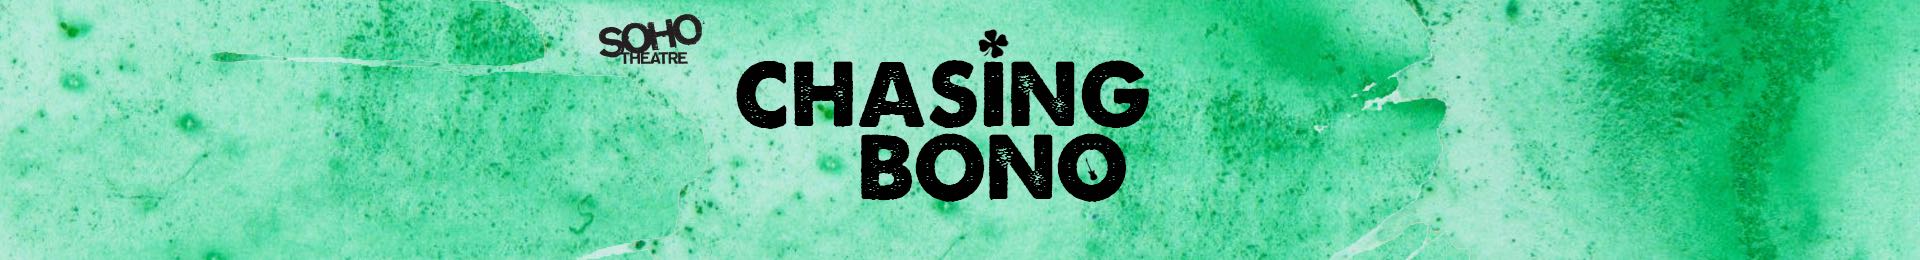 Chasing Bono banner image